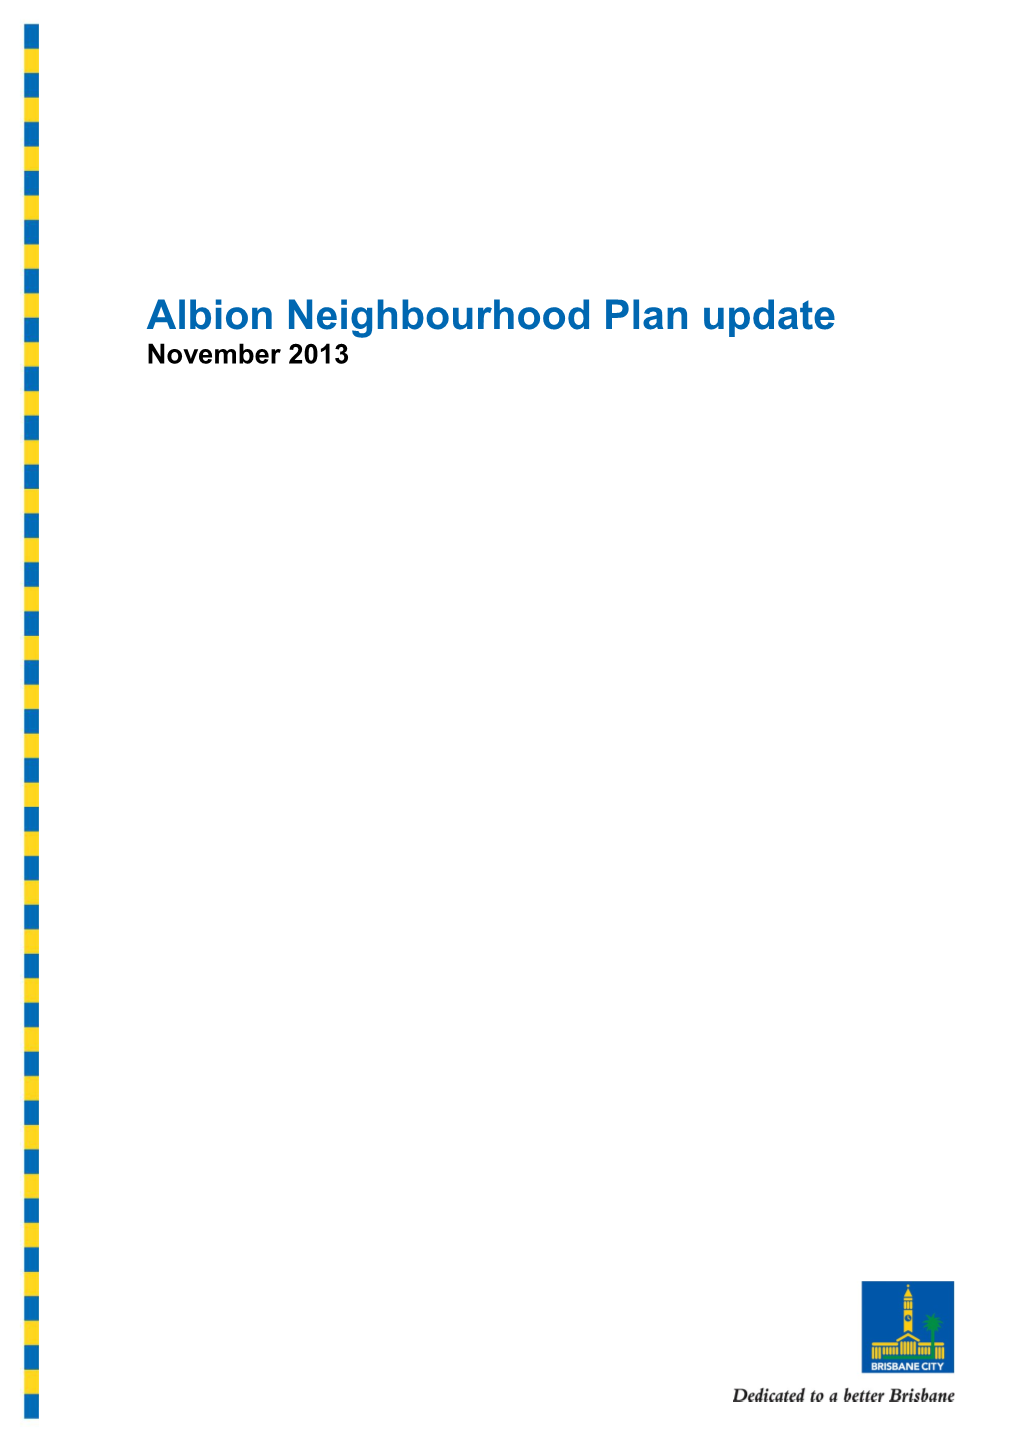 Albion Neighbourhood Plan Newsletter